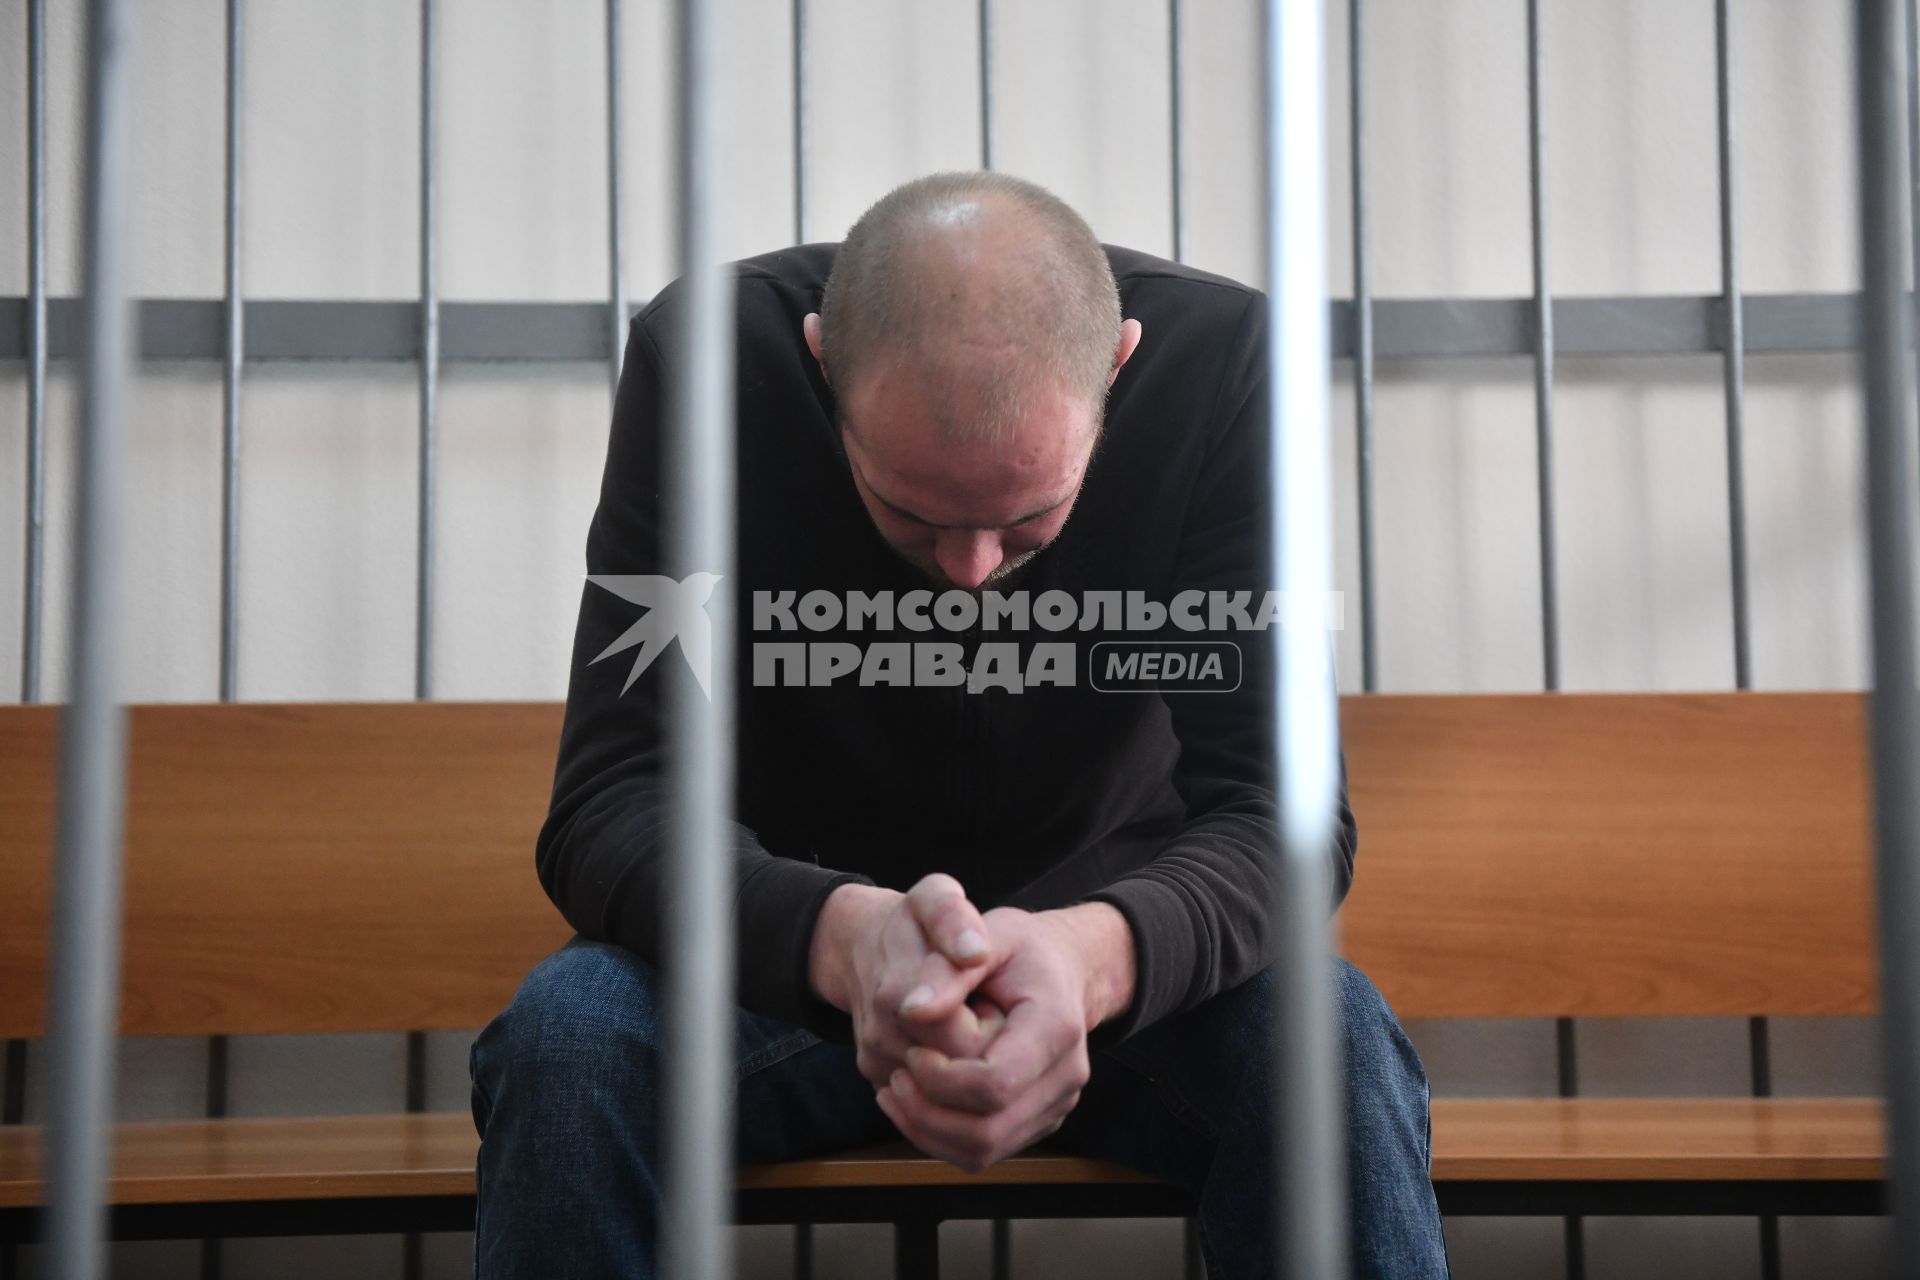 Екатеринбург. Преступник в камере зала суда, во время судебного заседания